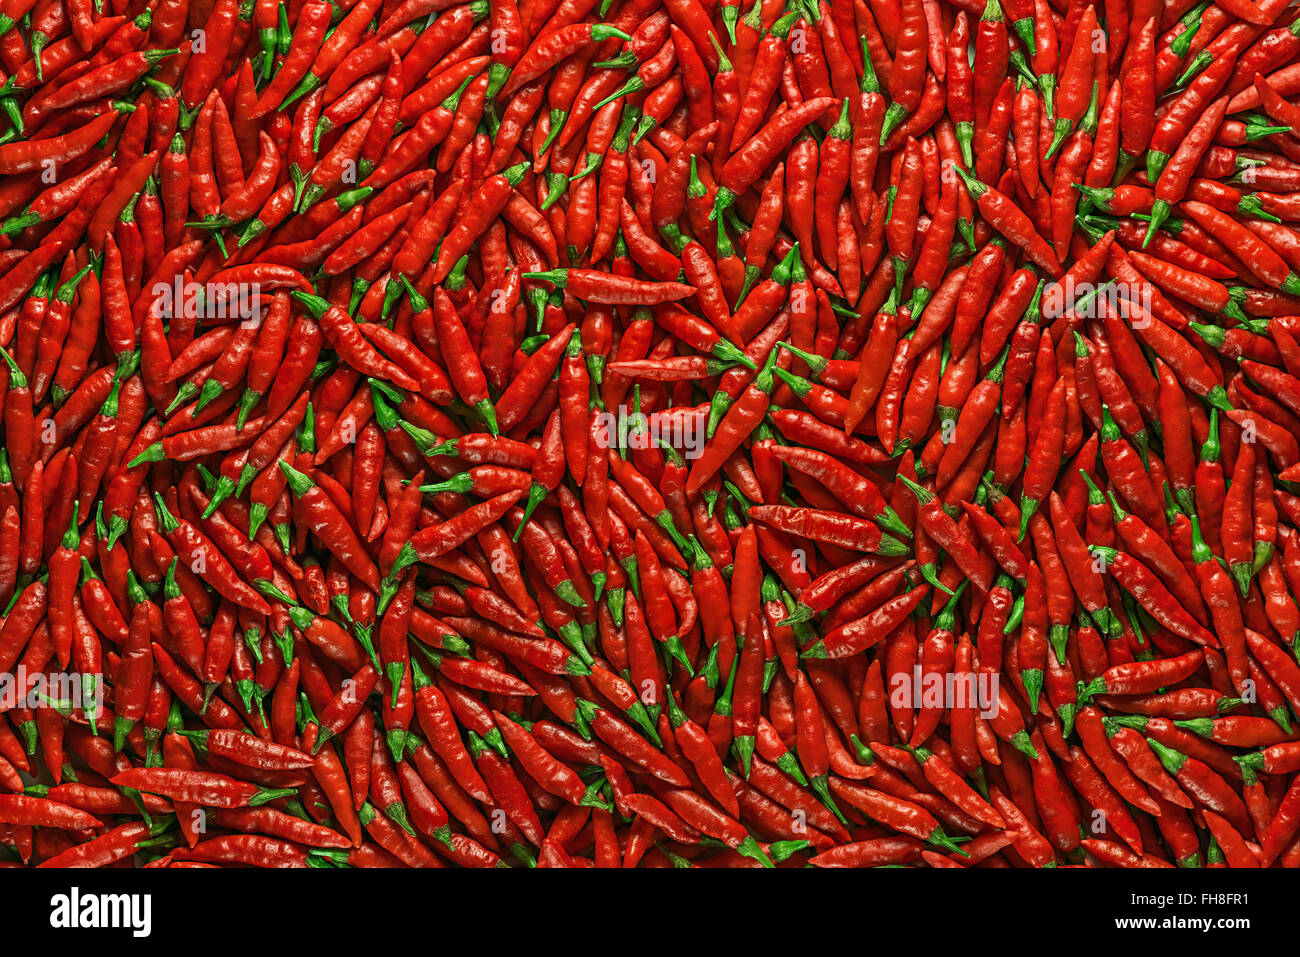 Peperoni rossi su una superficie piana. Immagine da utilizzare come sfondo. Foto Stock